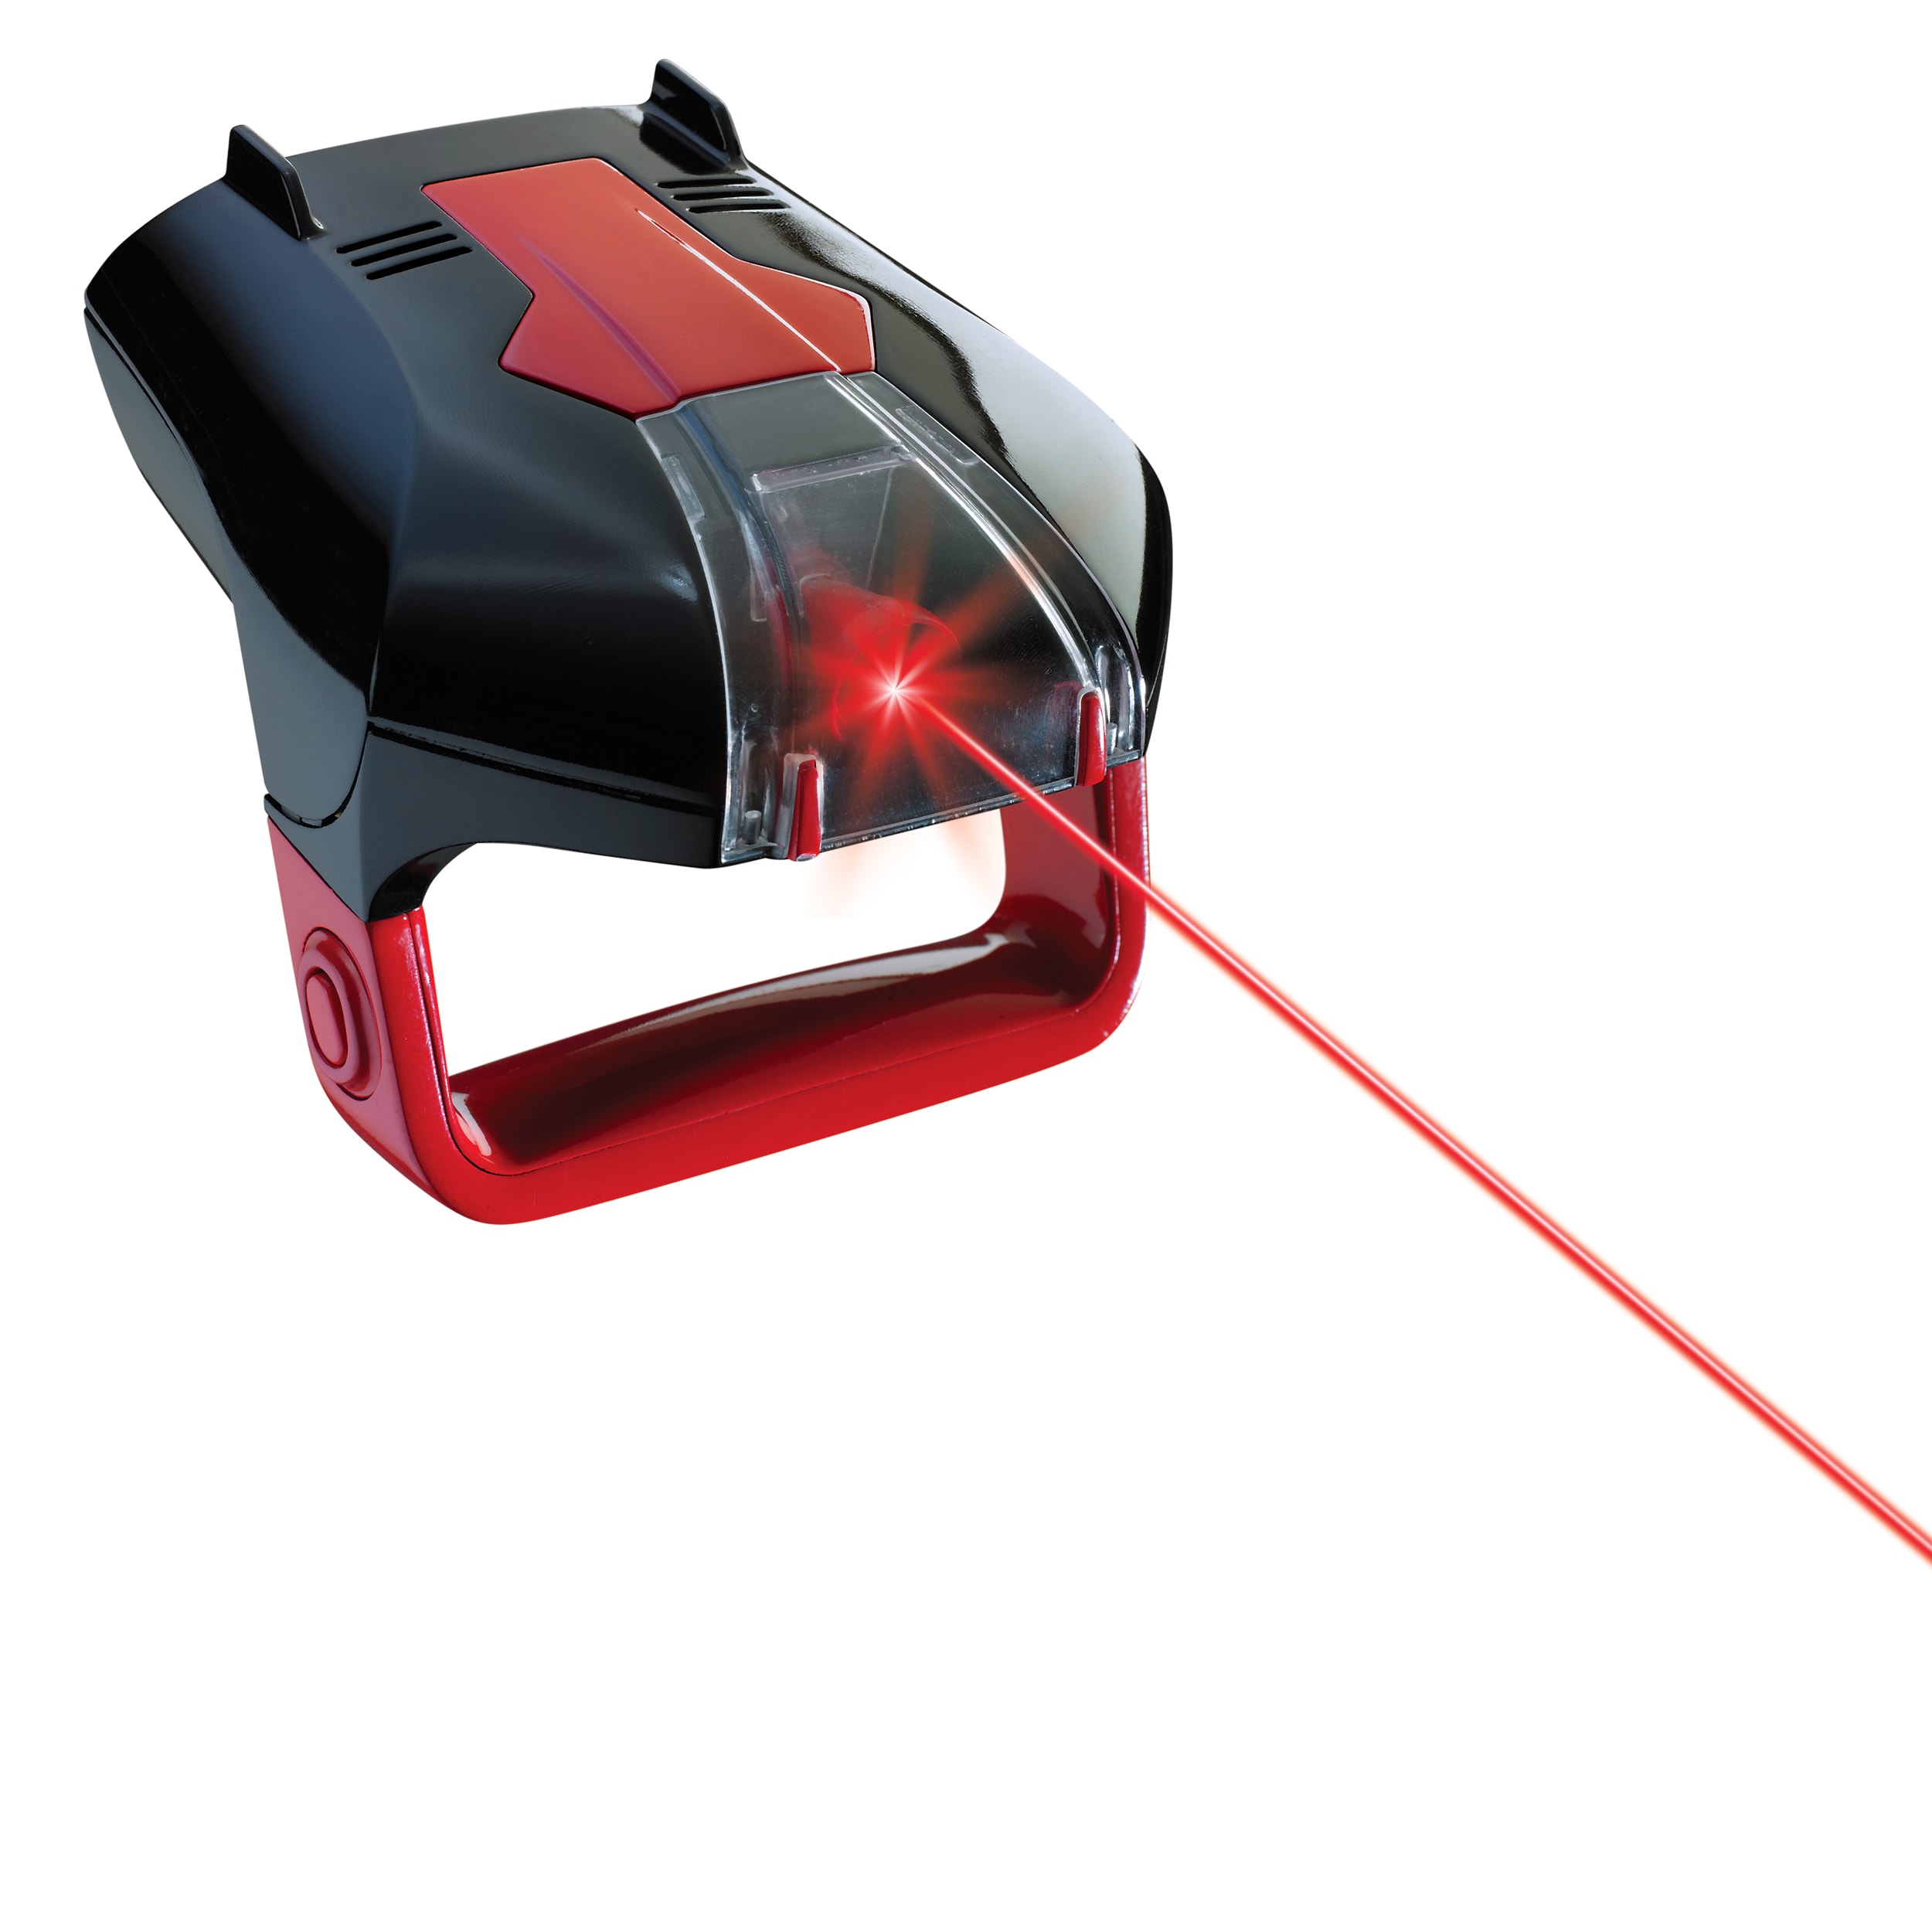 sharper image laser tag